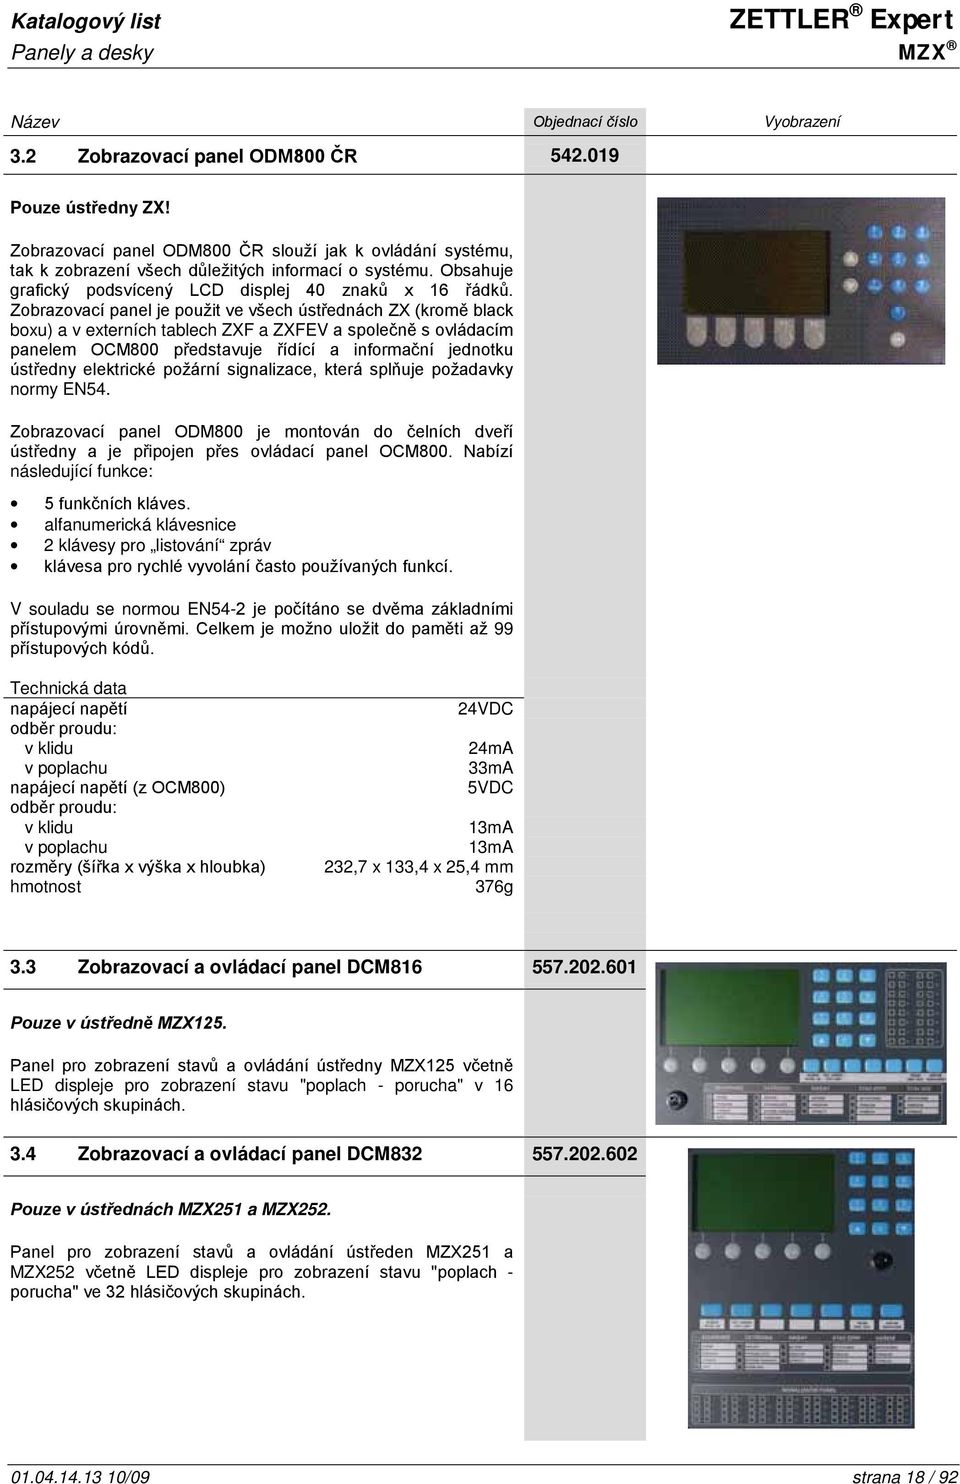 Zobrazovací panel je použit ve všech ústřednách ZX (kromě black boxu) a v externích tablech ZXF a ZXFEV a společně s ovládacím panelem OCM800 představuje řídící a informační jednotku ústředny